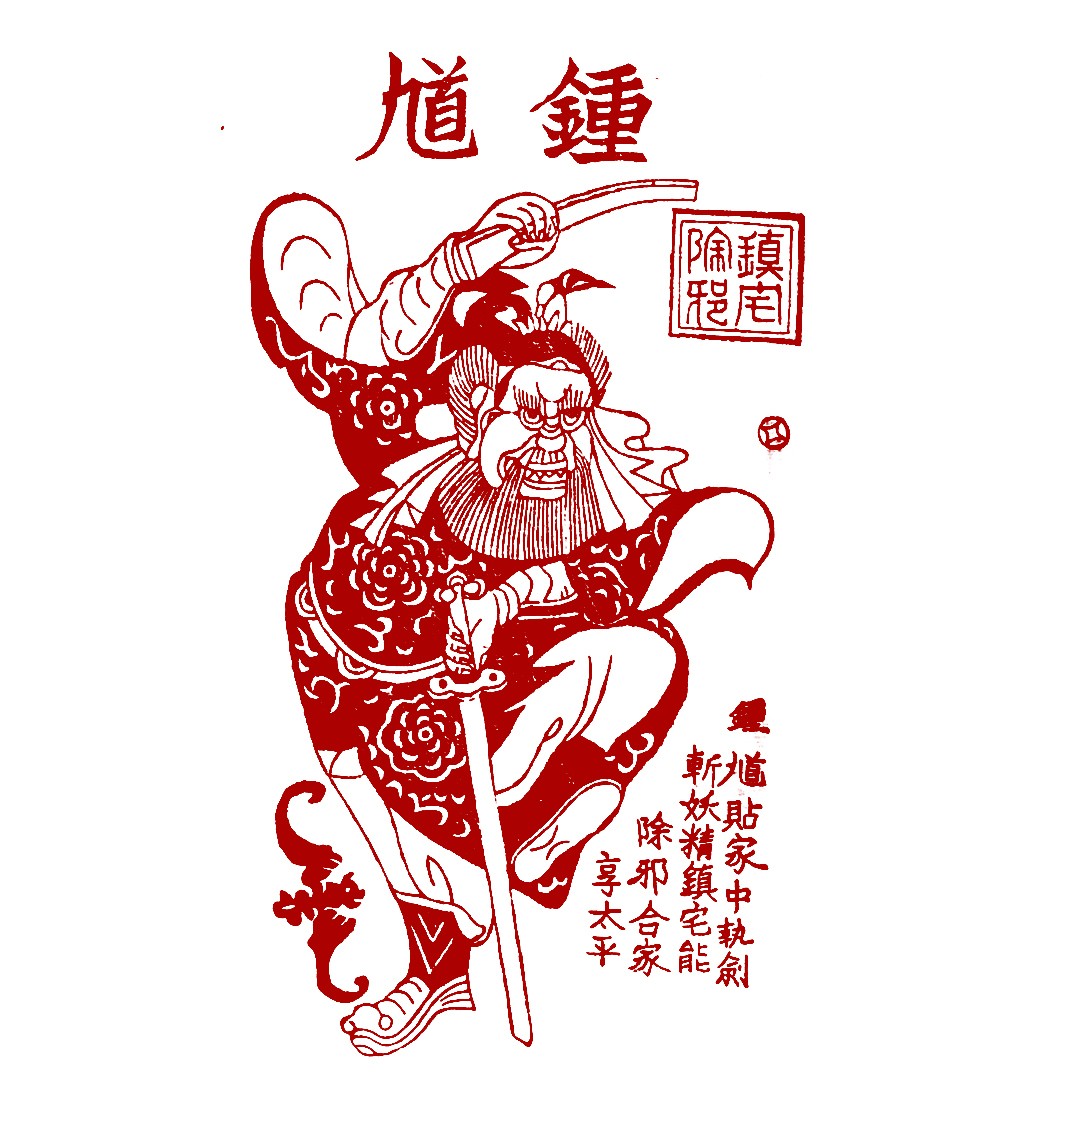 回馈藏友，数藏中国推出国家非遗凤翔年画钟馗数字藏品